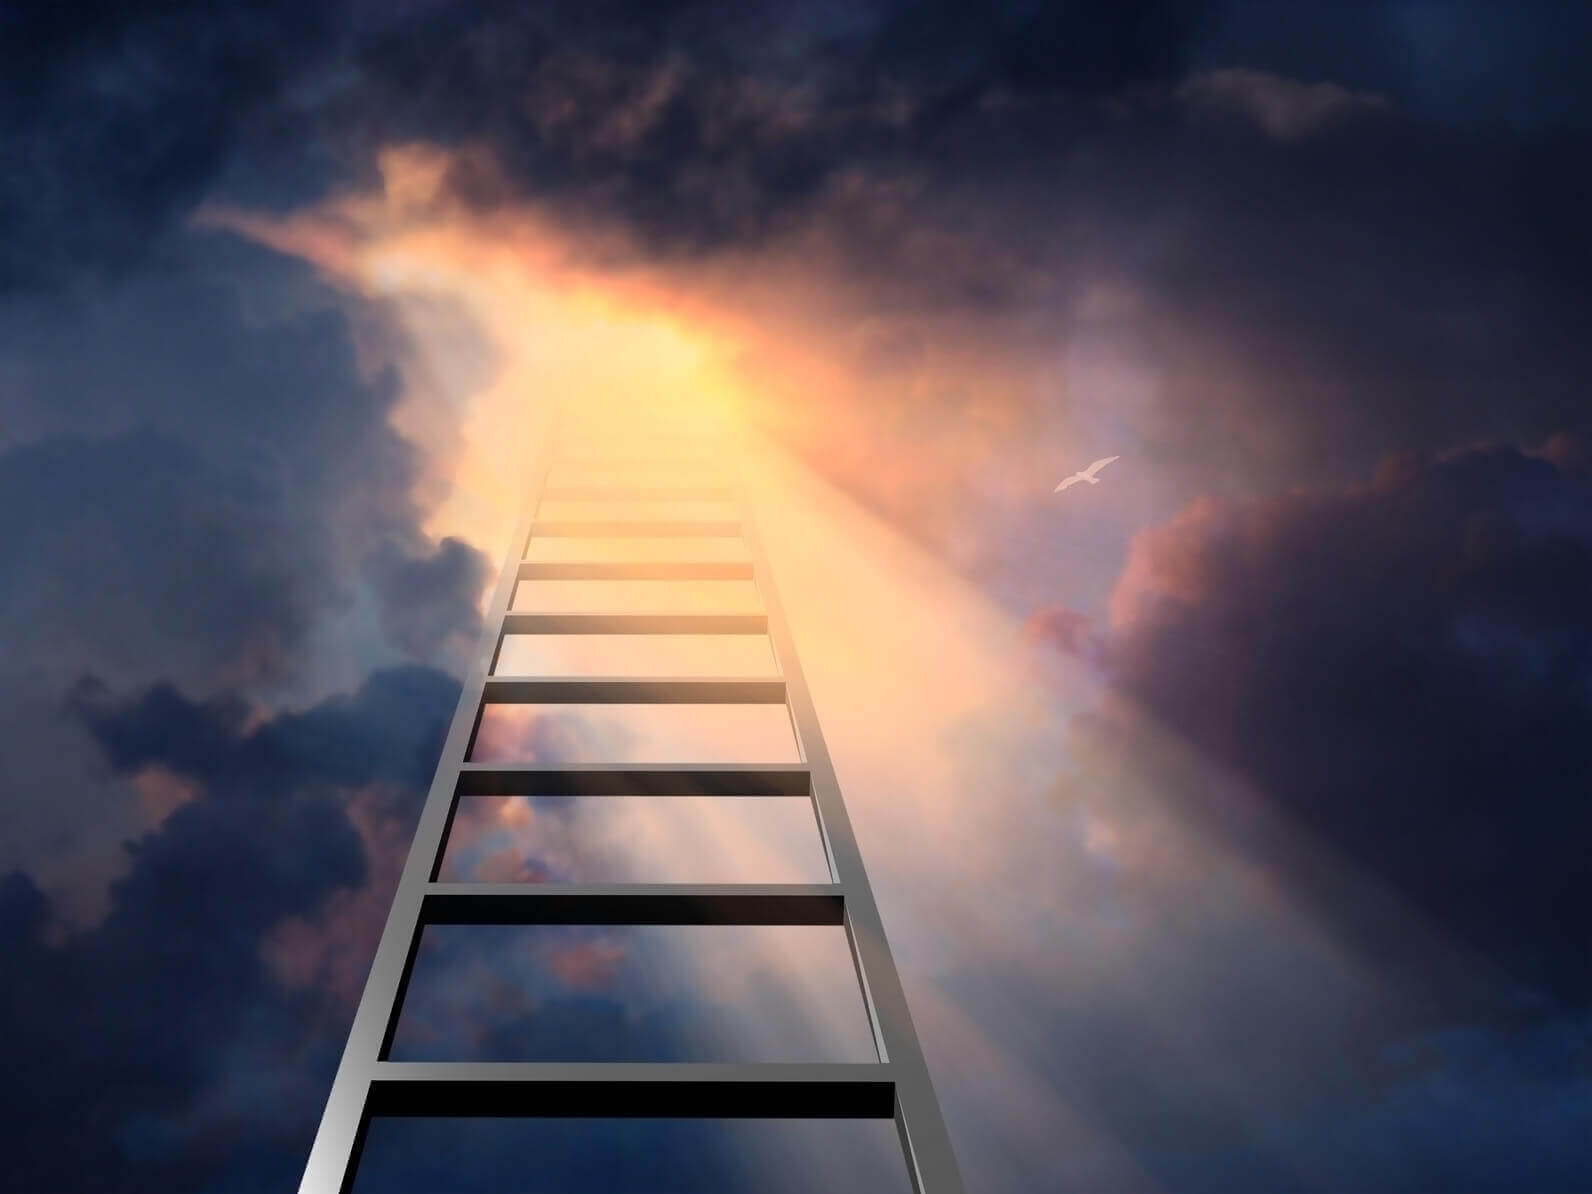 Ladder strong spiritual symbol